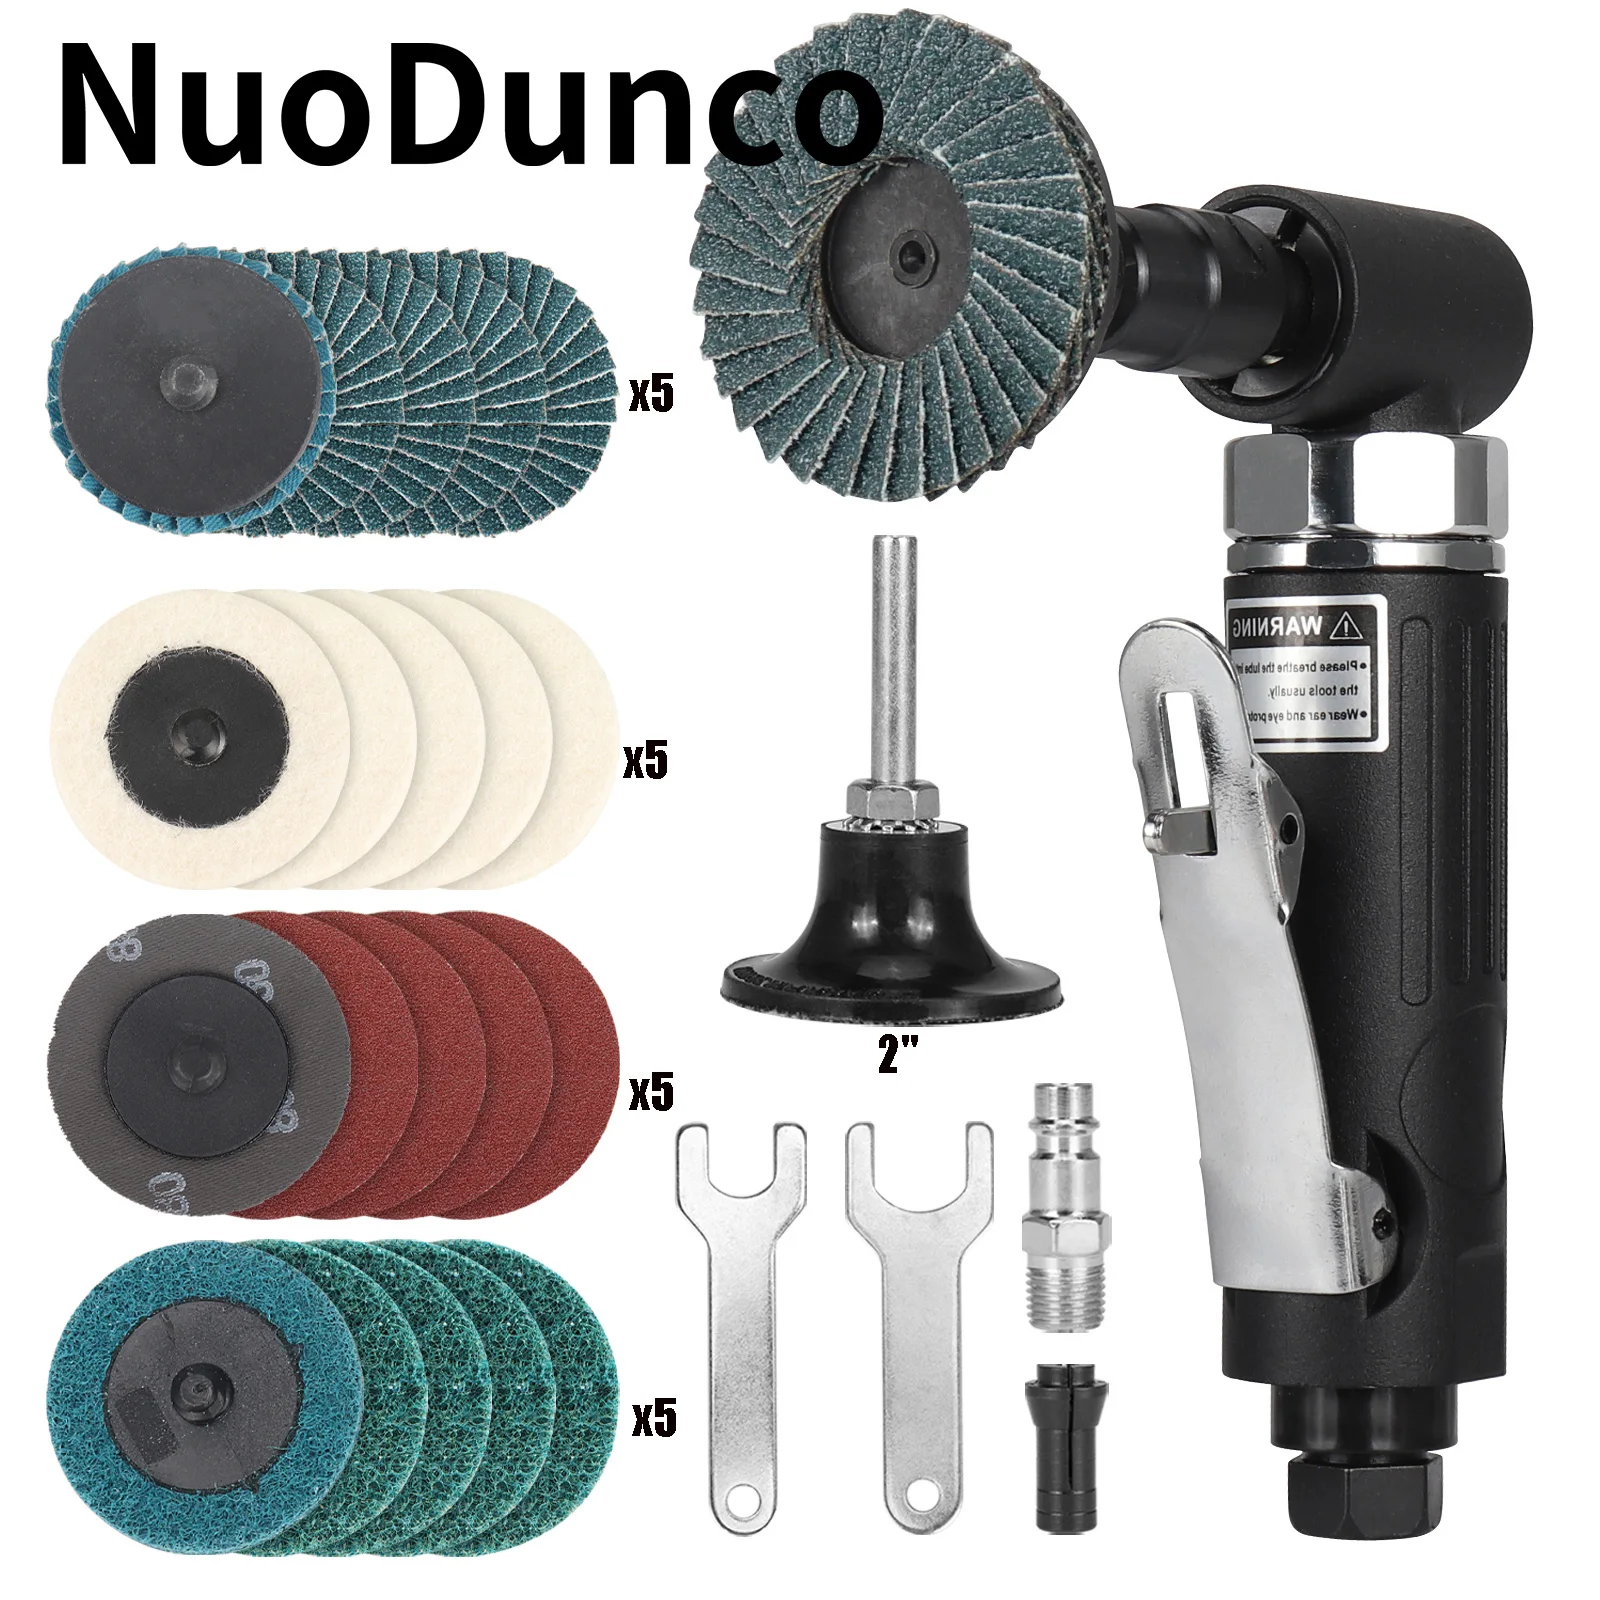 NunDunco 90 Degree Air Die Grinder Mini Air Grinder 2Inch Roll Lock Sanding Discs for Deburring Rust Removal Metal Grinding